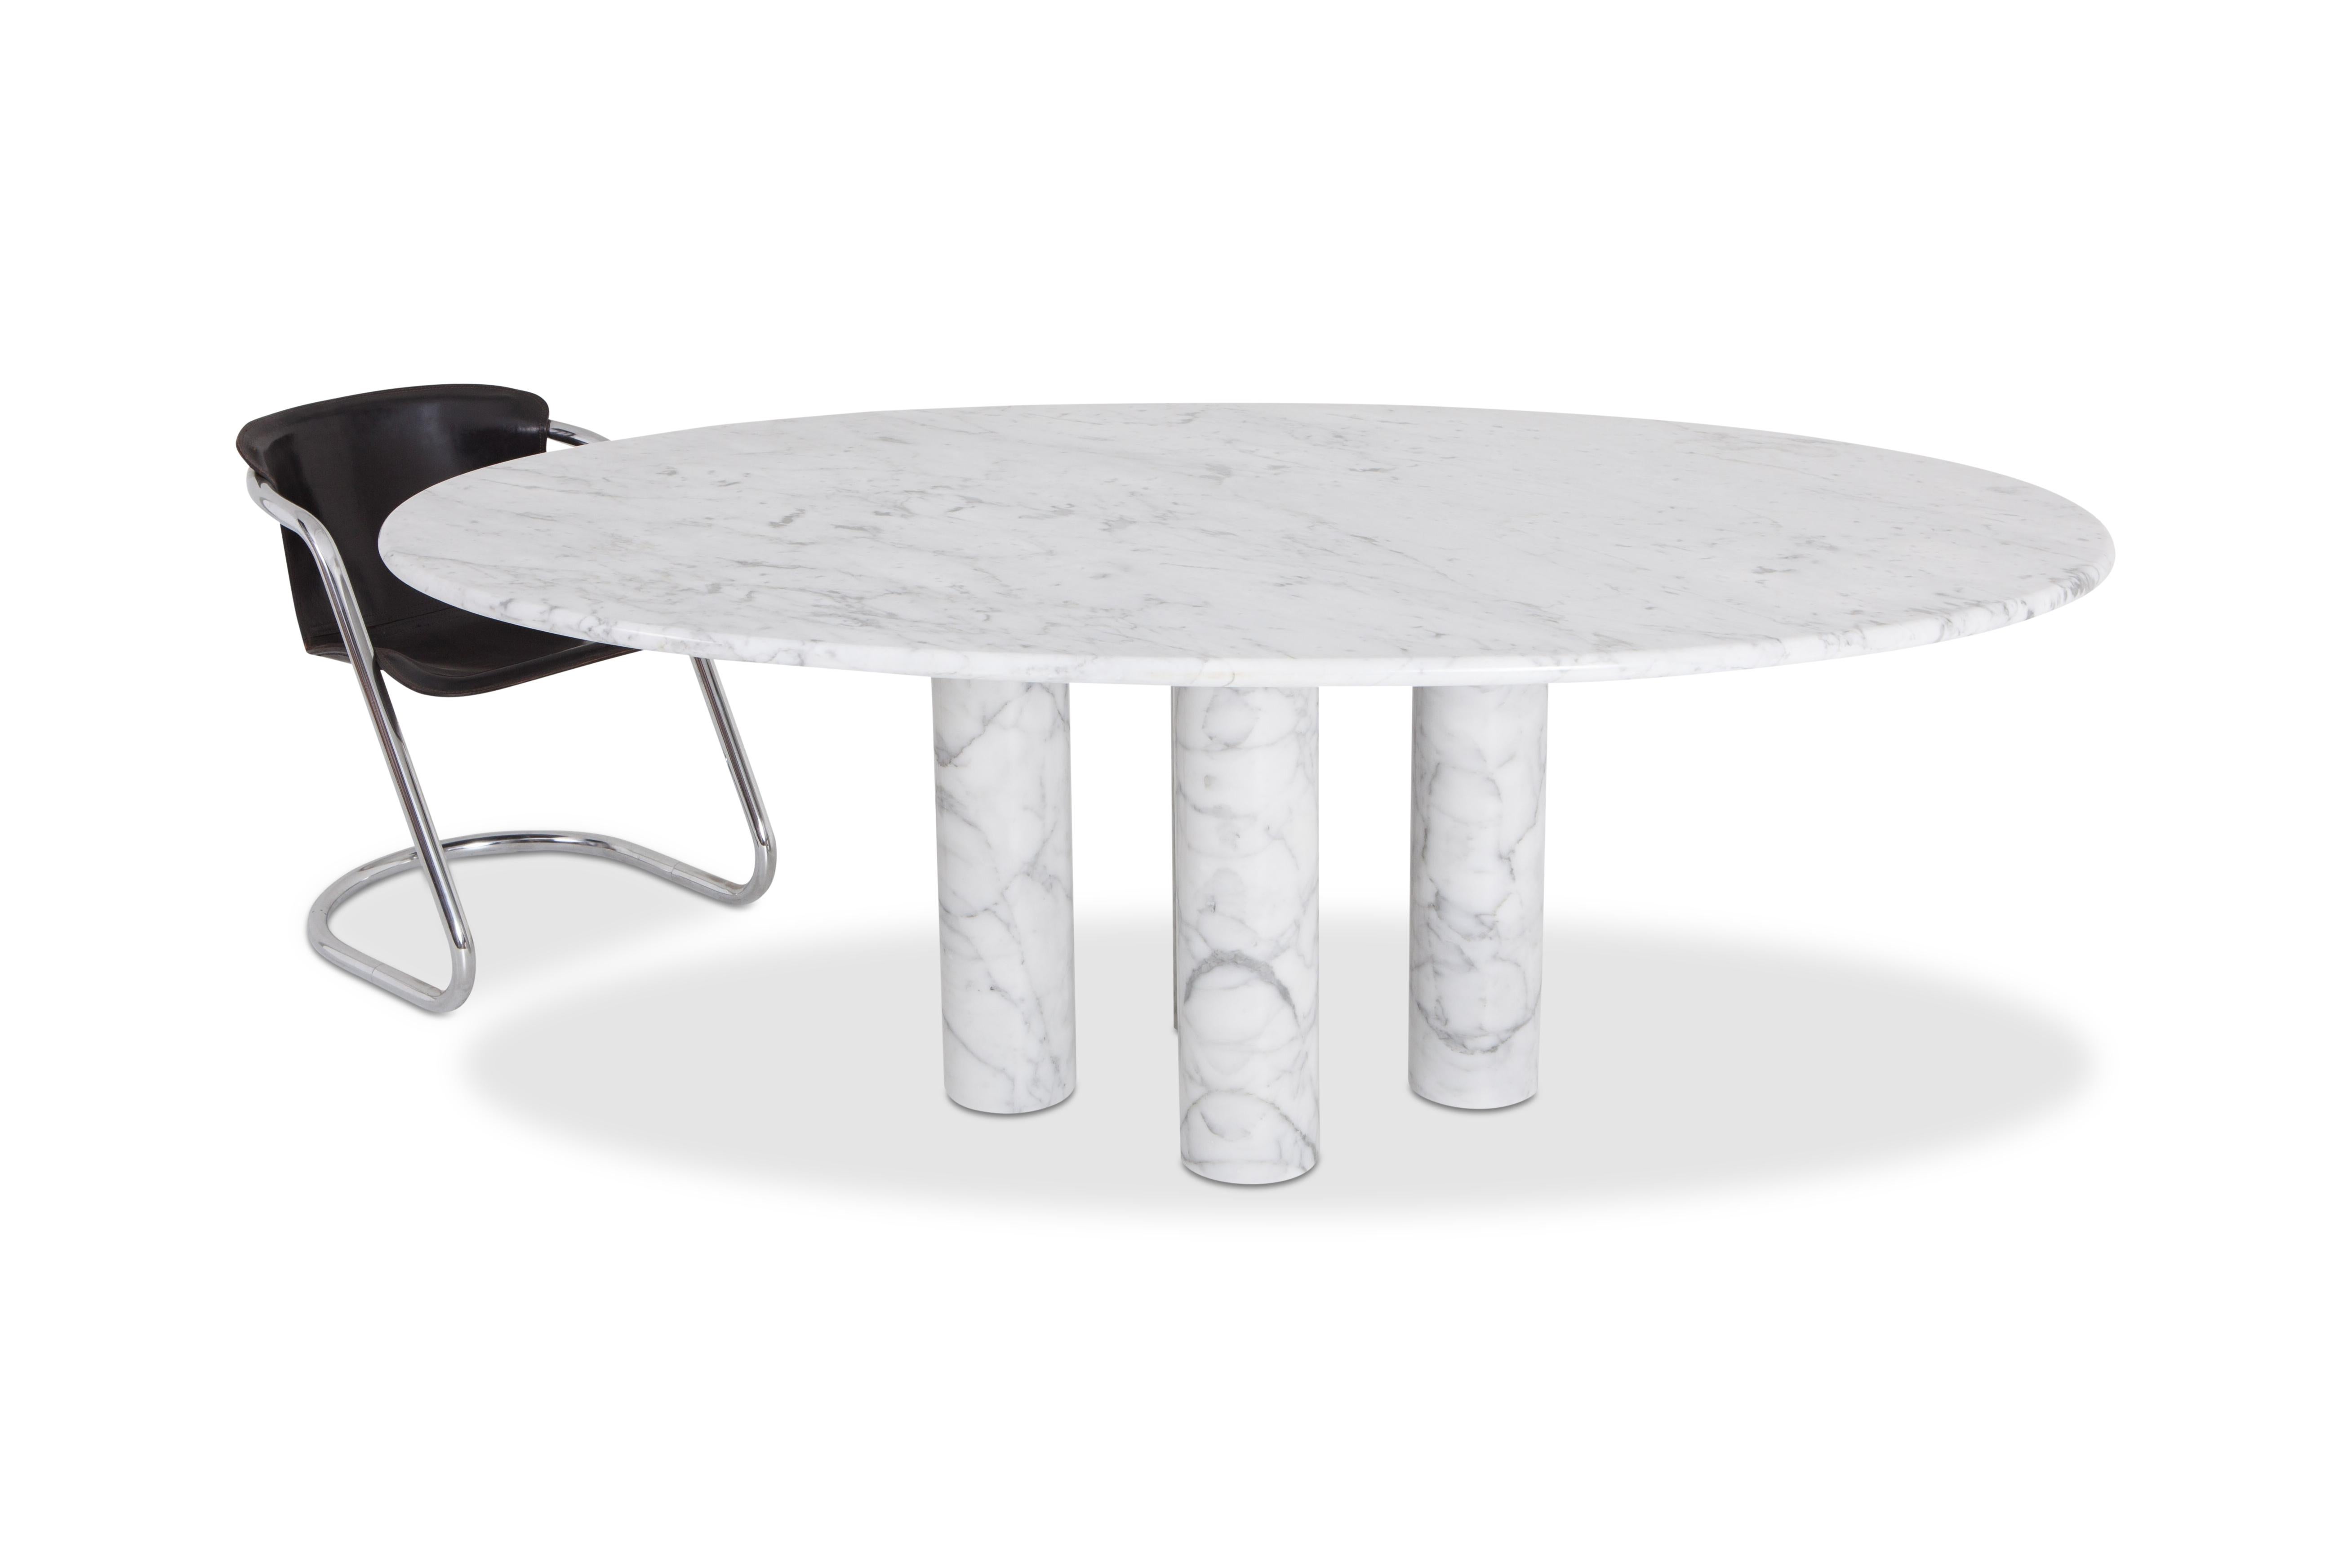 Minimalist Mario Bellini Il Colonnata Oval Dining Table in Carrara Marble for Cassina